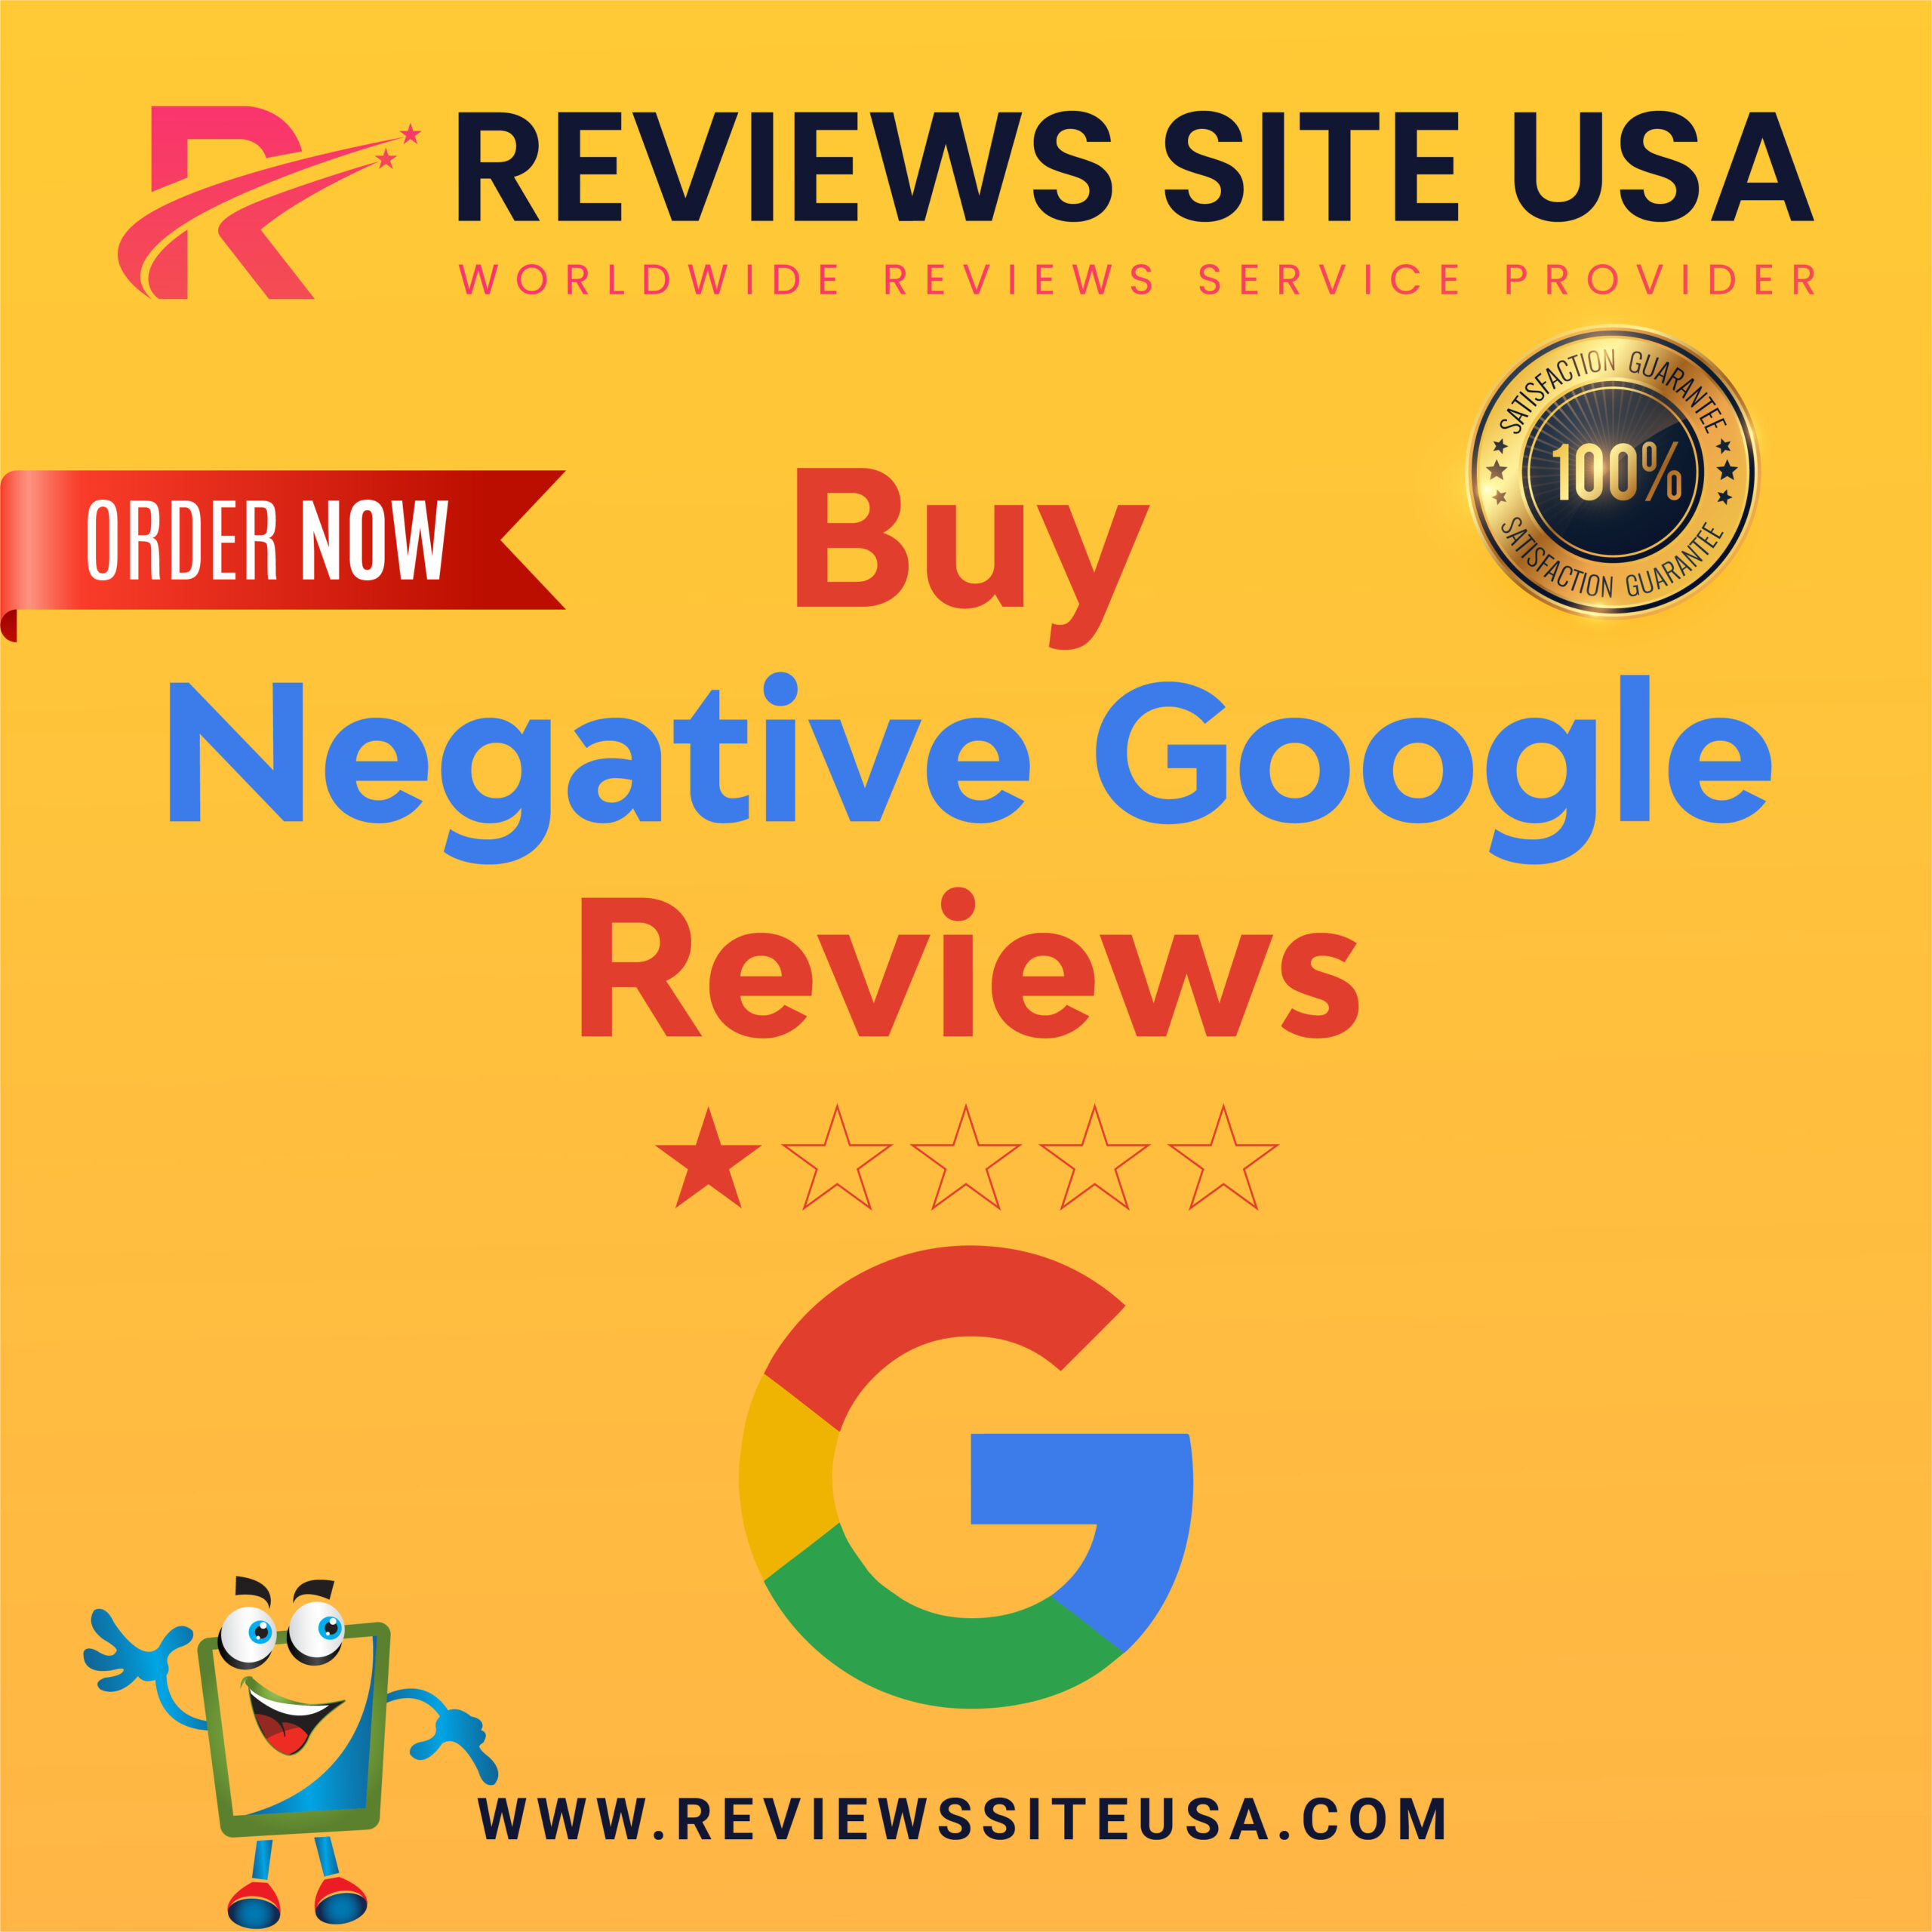 Buy Negative Google Reviews - 1 Star, Fake, Bad Reviews